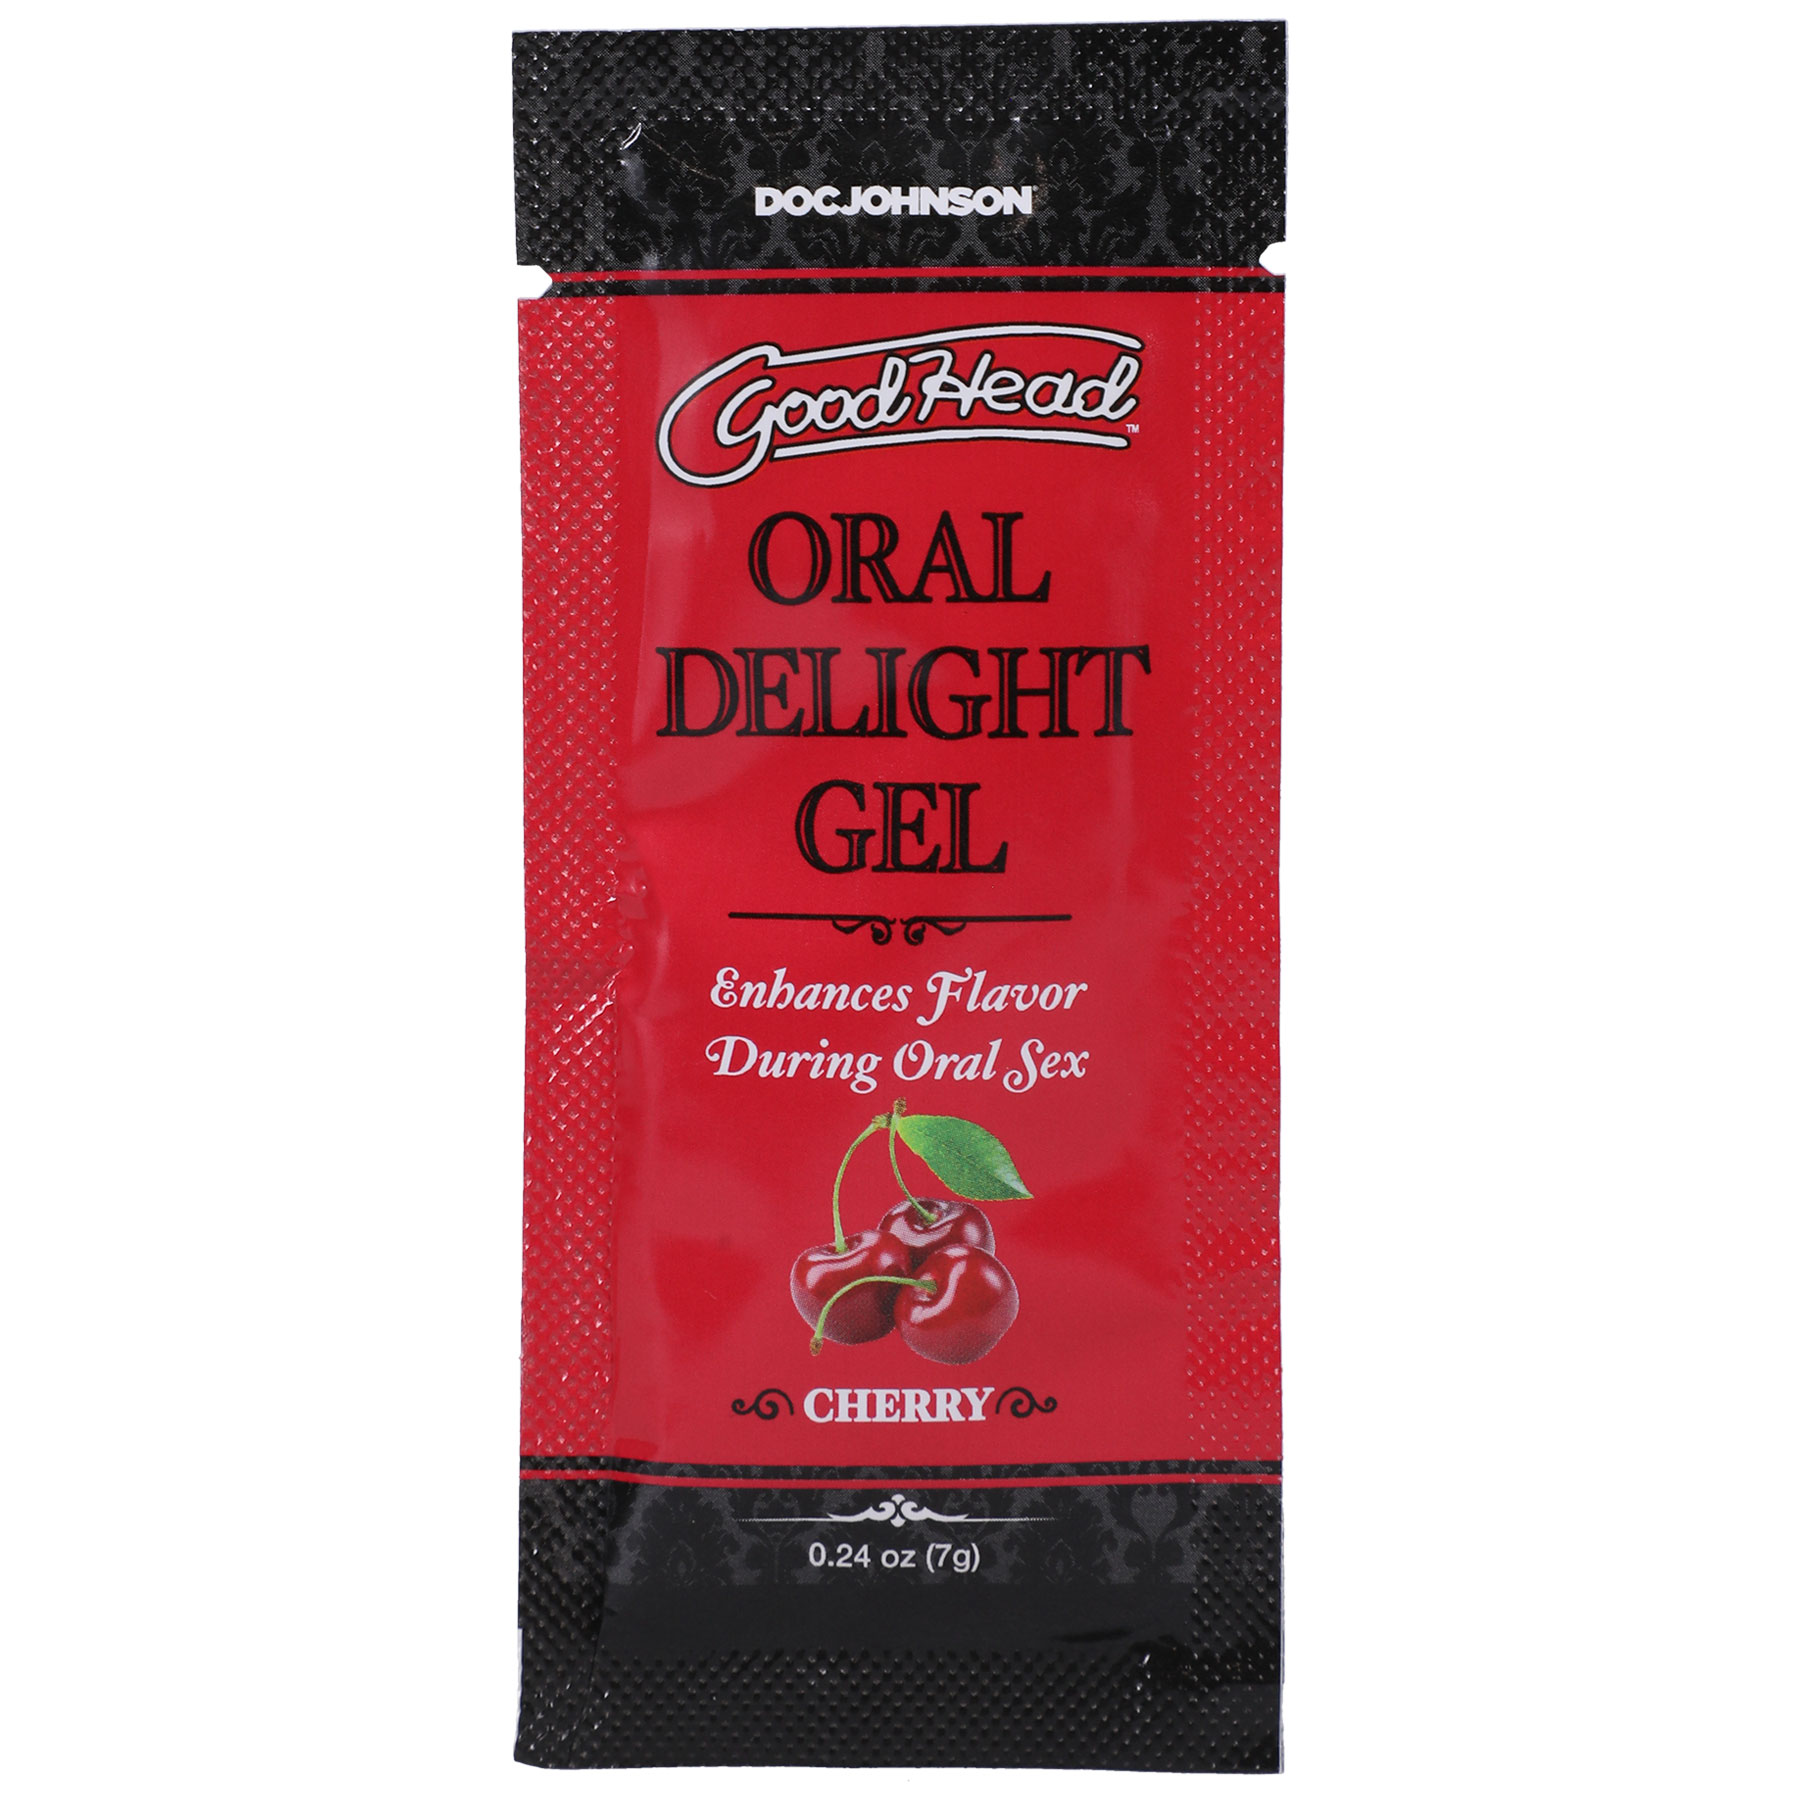 goodhead oral delight gel cherry . oz 